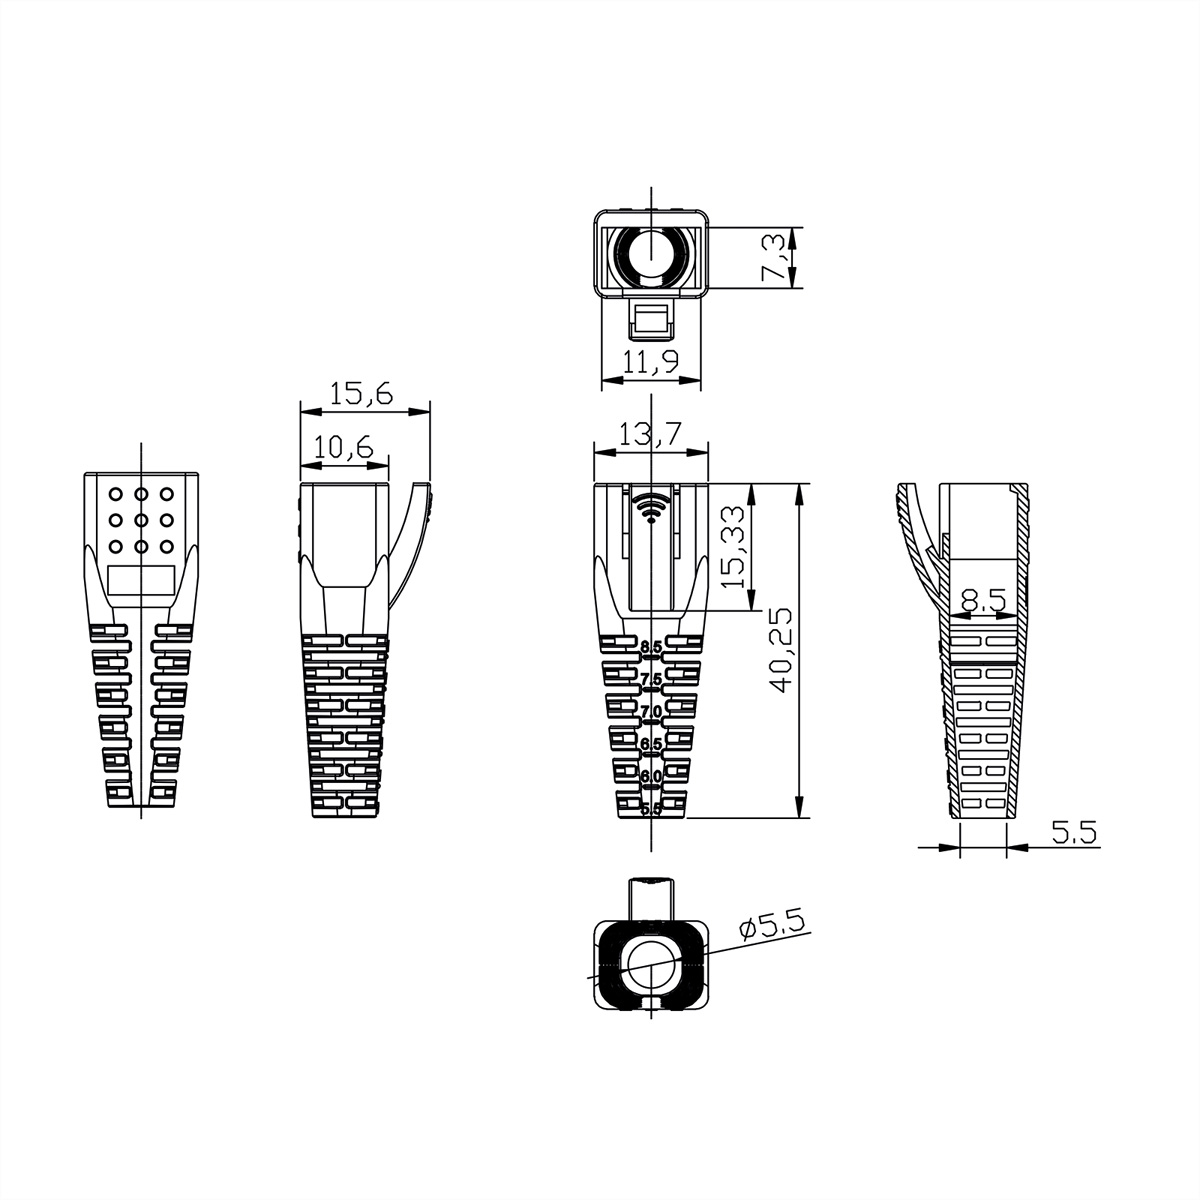 ROLINE Knickschutztülle für RJ-45 RJ-45 Modular für Tüllen Plugs